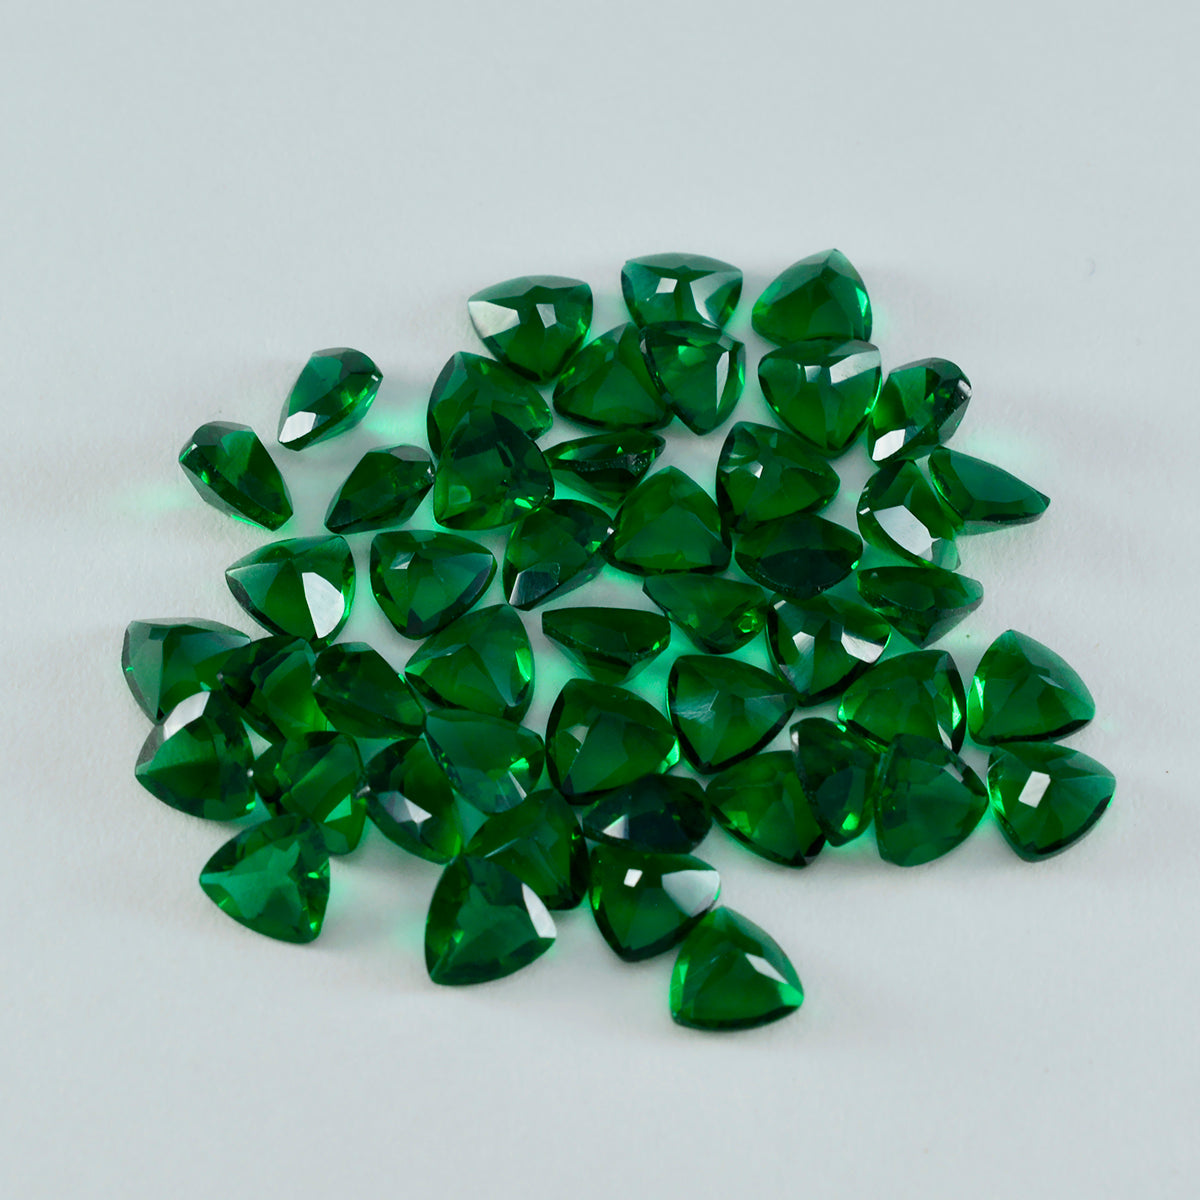 Riyogems 1 pieza Esmeralda verde CZ facetada 7x7mm forma de trillón belleza calidad gema suelta